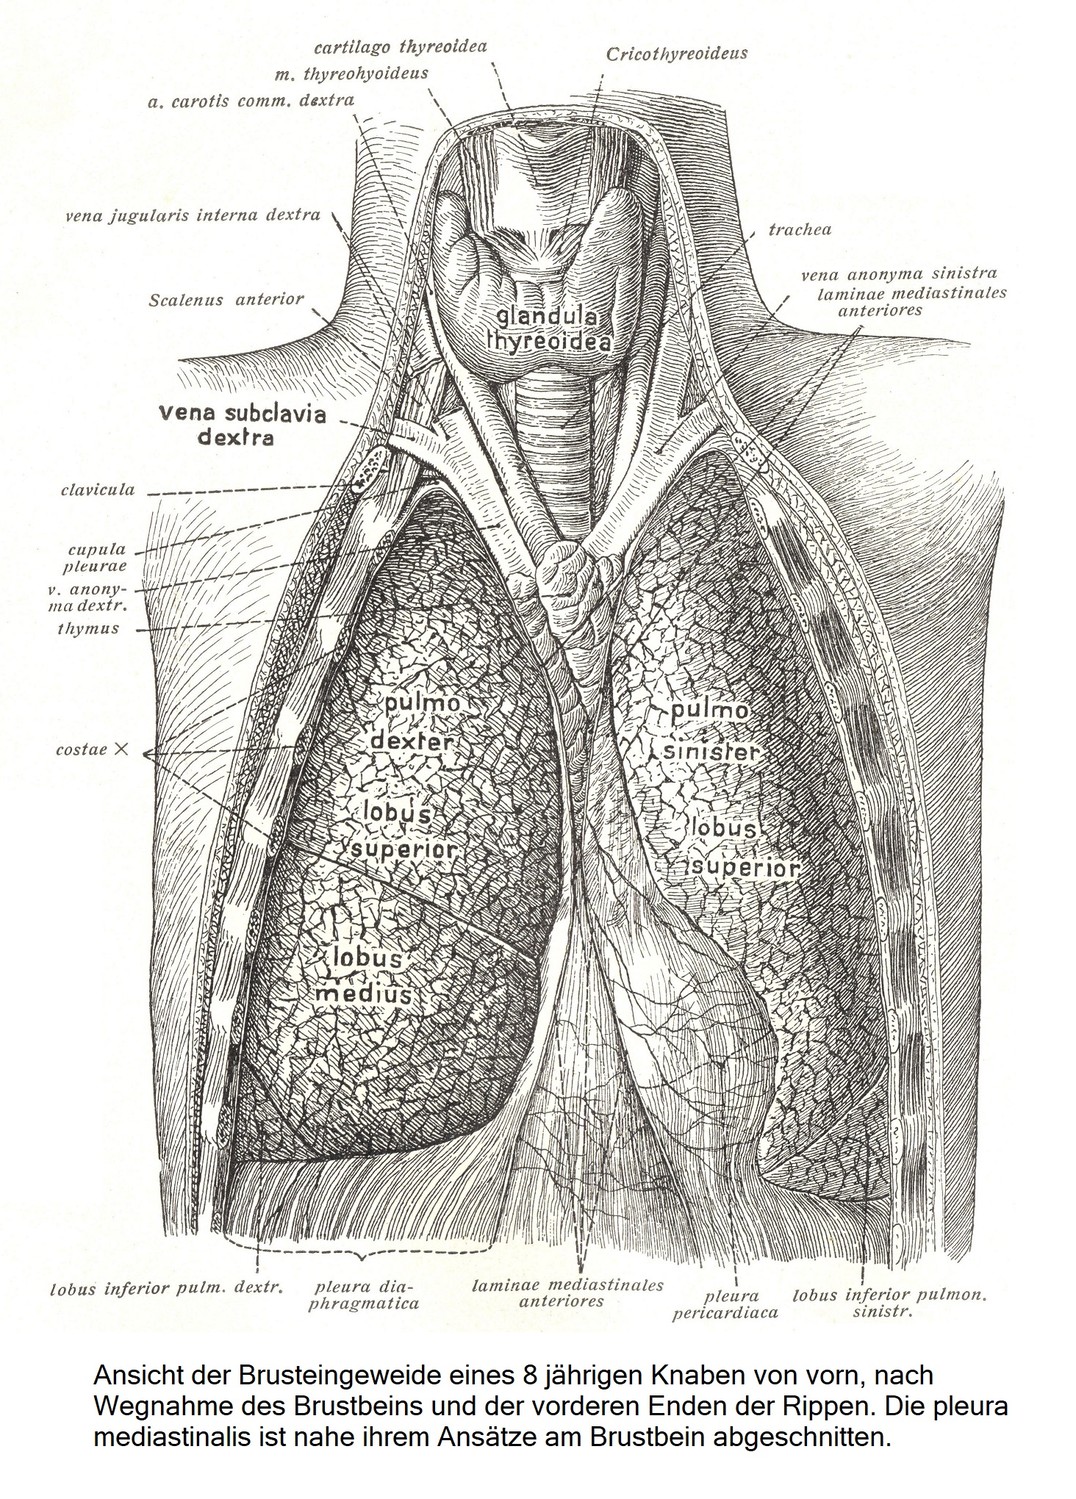 Вид спереди внутренних органов грудной клетки 8-летнего мальчика после удаления грудины и передних концов ребер. Медиастинальная плевра отсекается в месте ее прикрепления к грудине